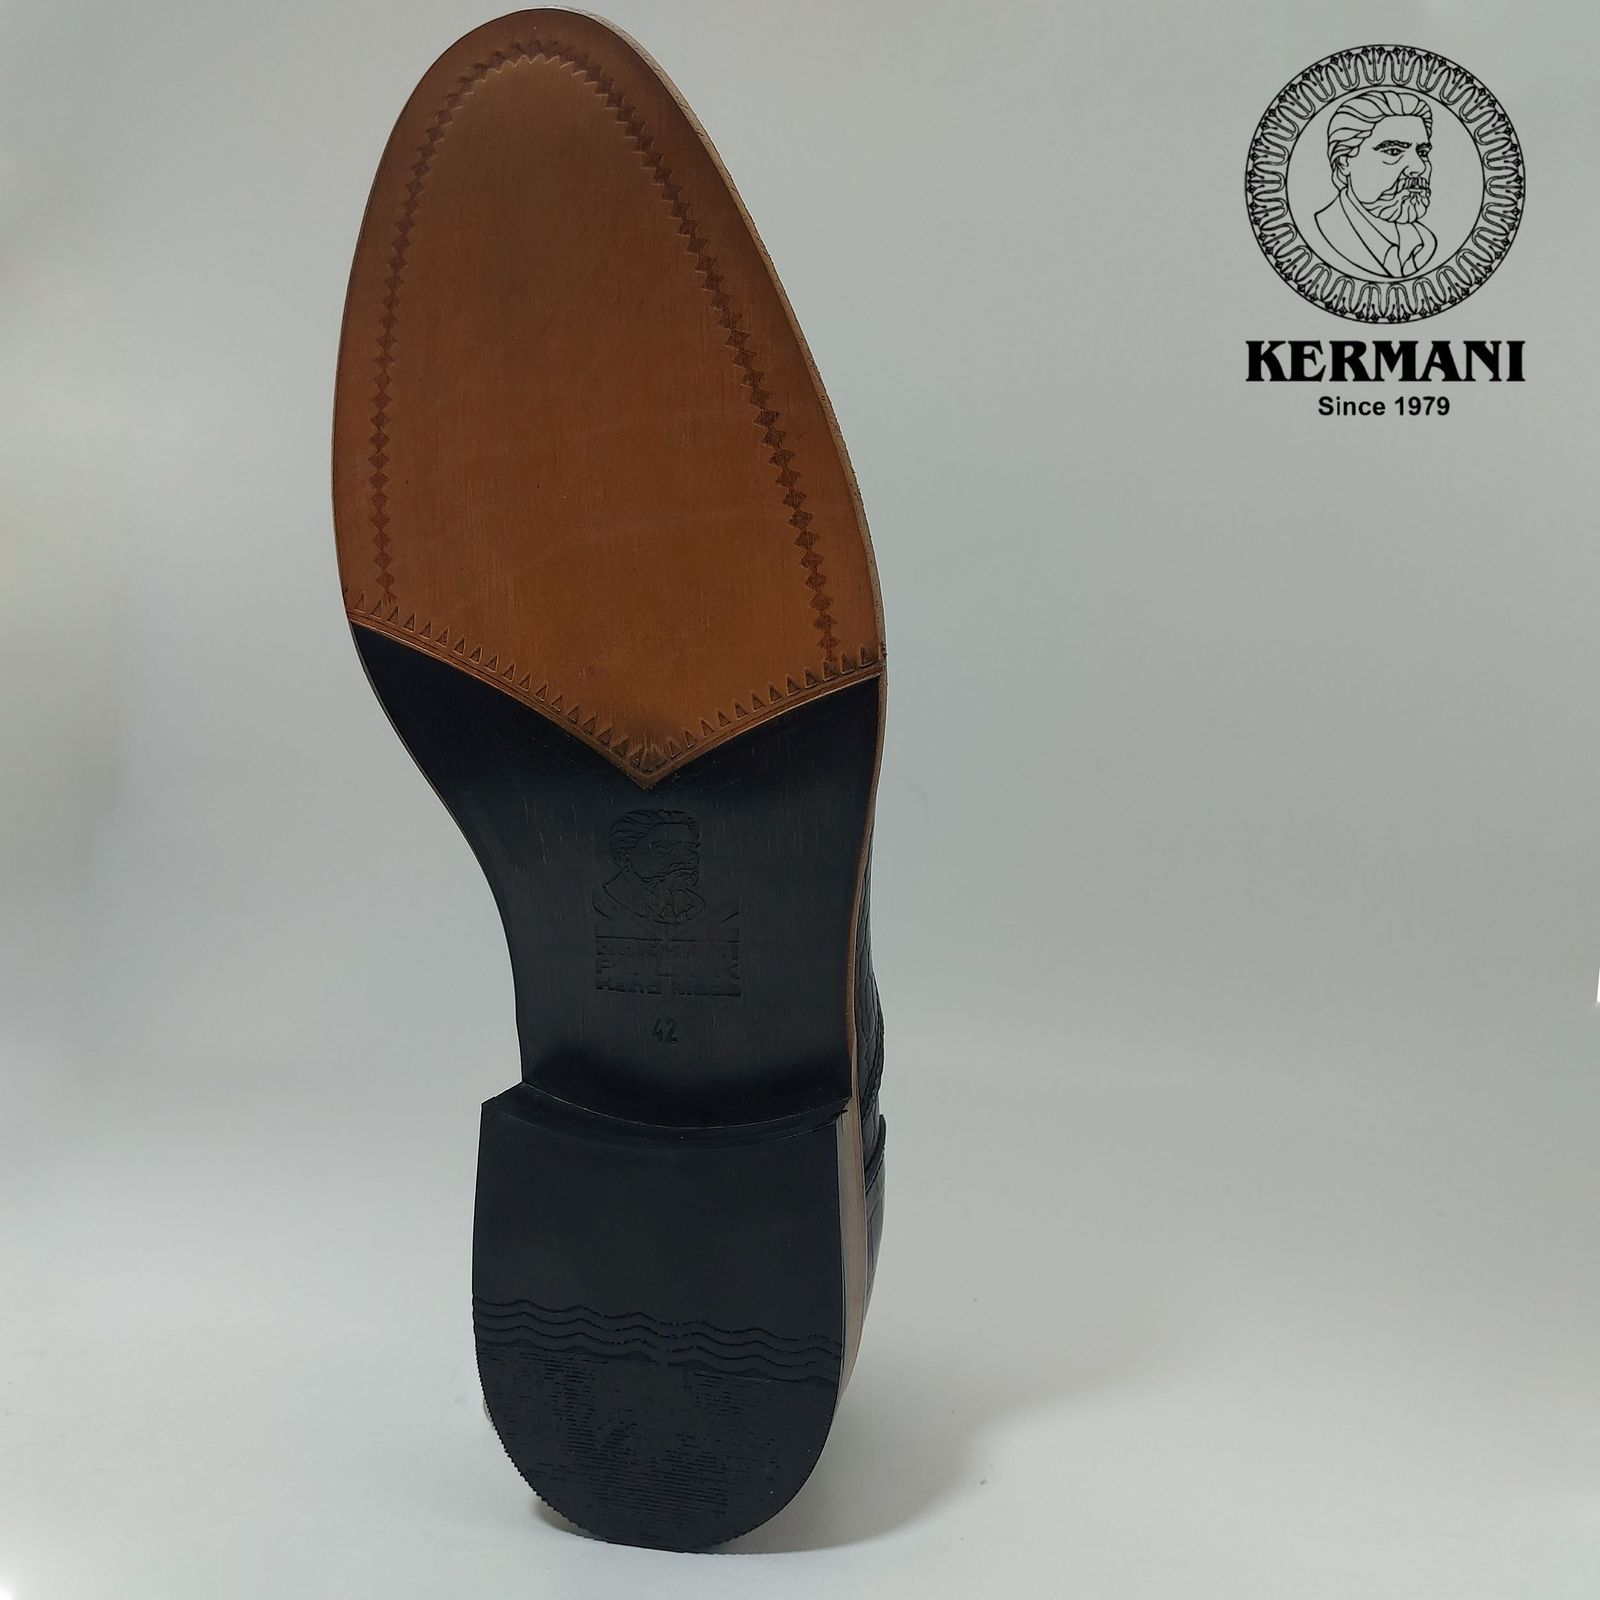 کفش مردانه کرمانی مدل تمام چرم دستدوز کد 350 رنگ قهوه ای -  - 9